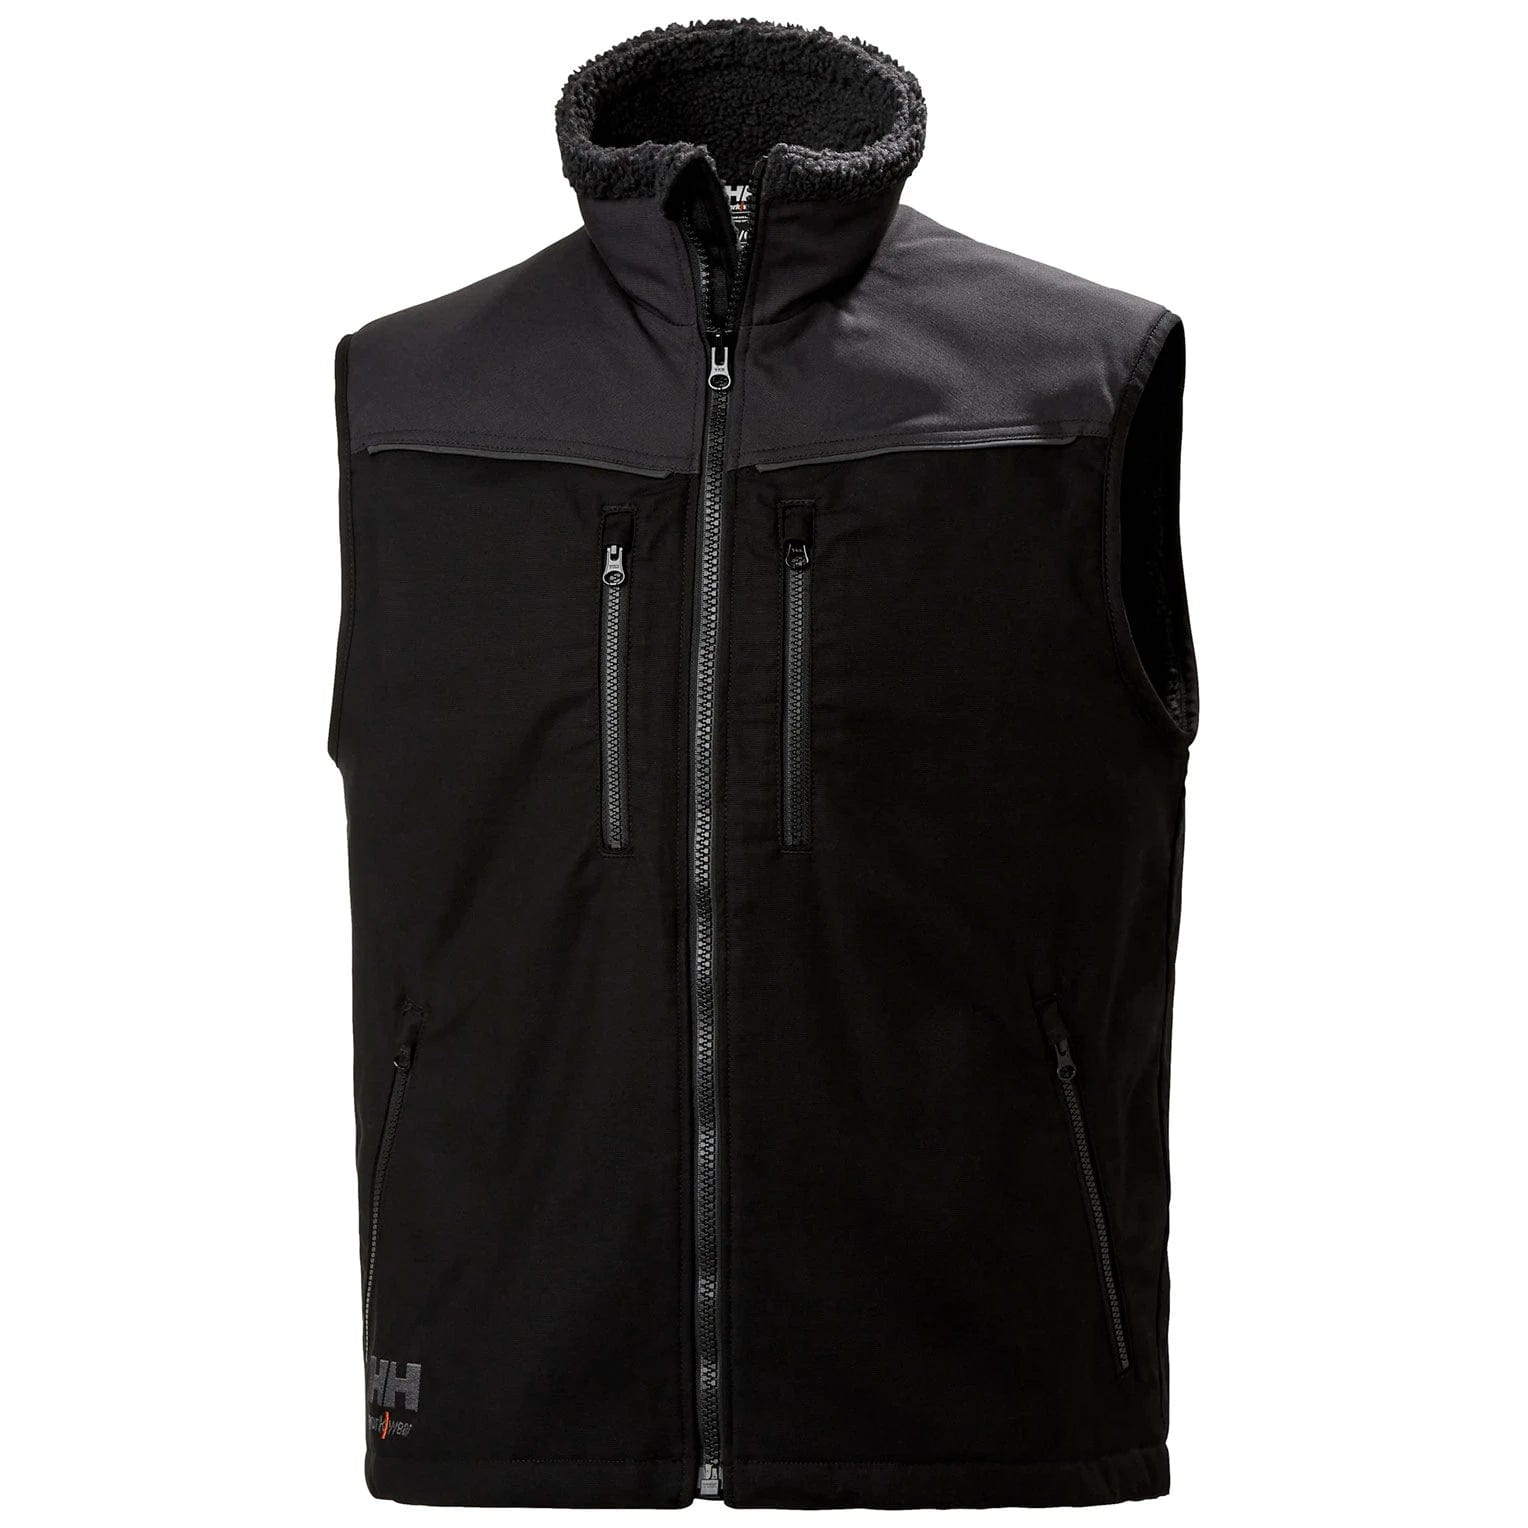 Helly Hansen Workwear Outerwear S / Black/Ebony Helly Hansen Workwear - Men's Oxford Lined Vest